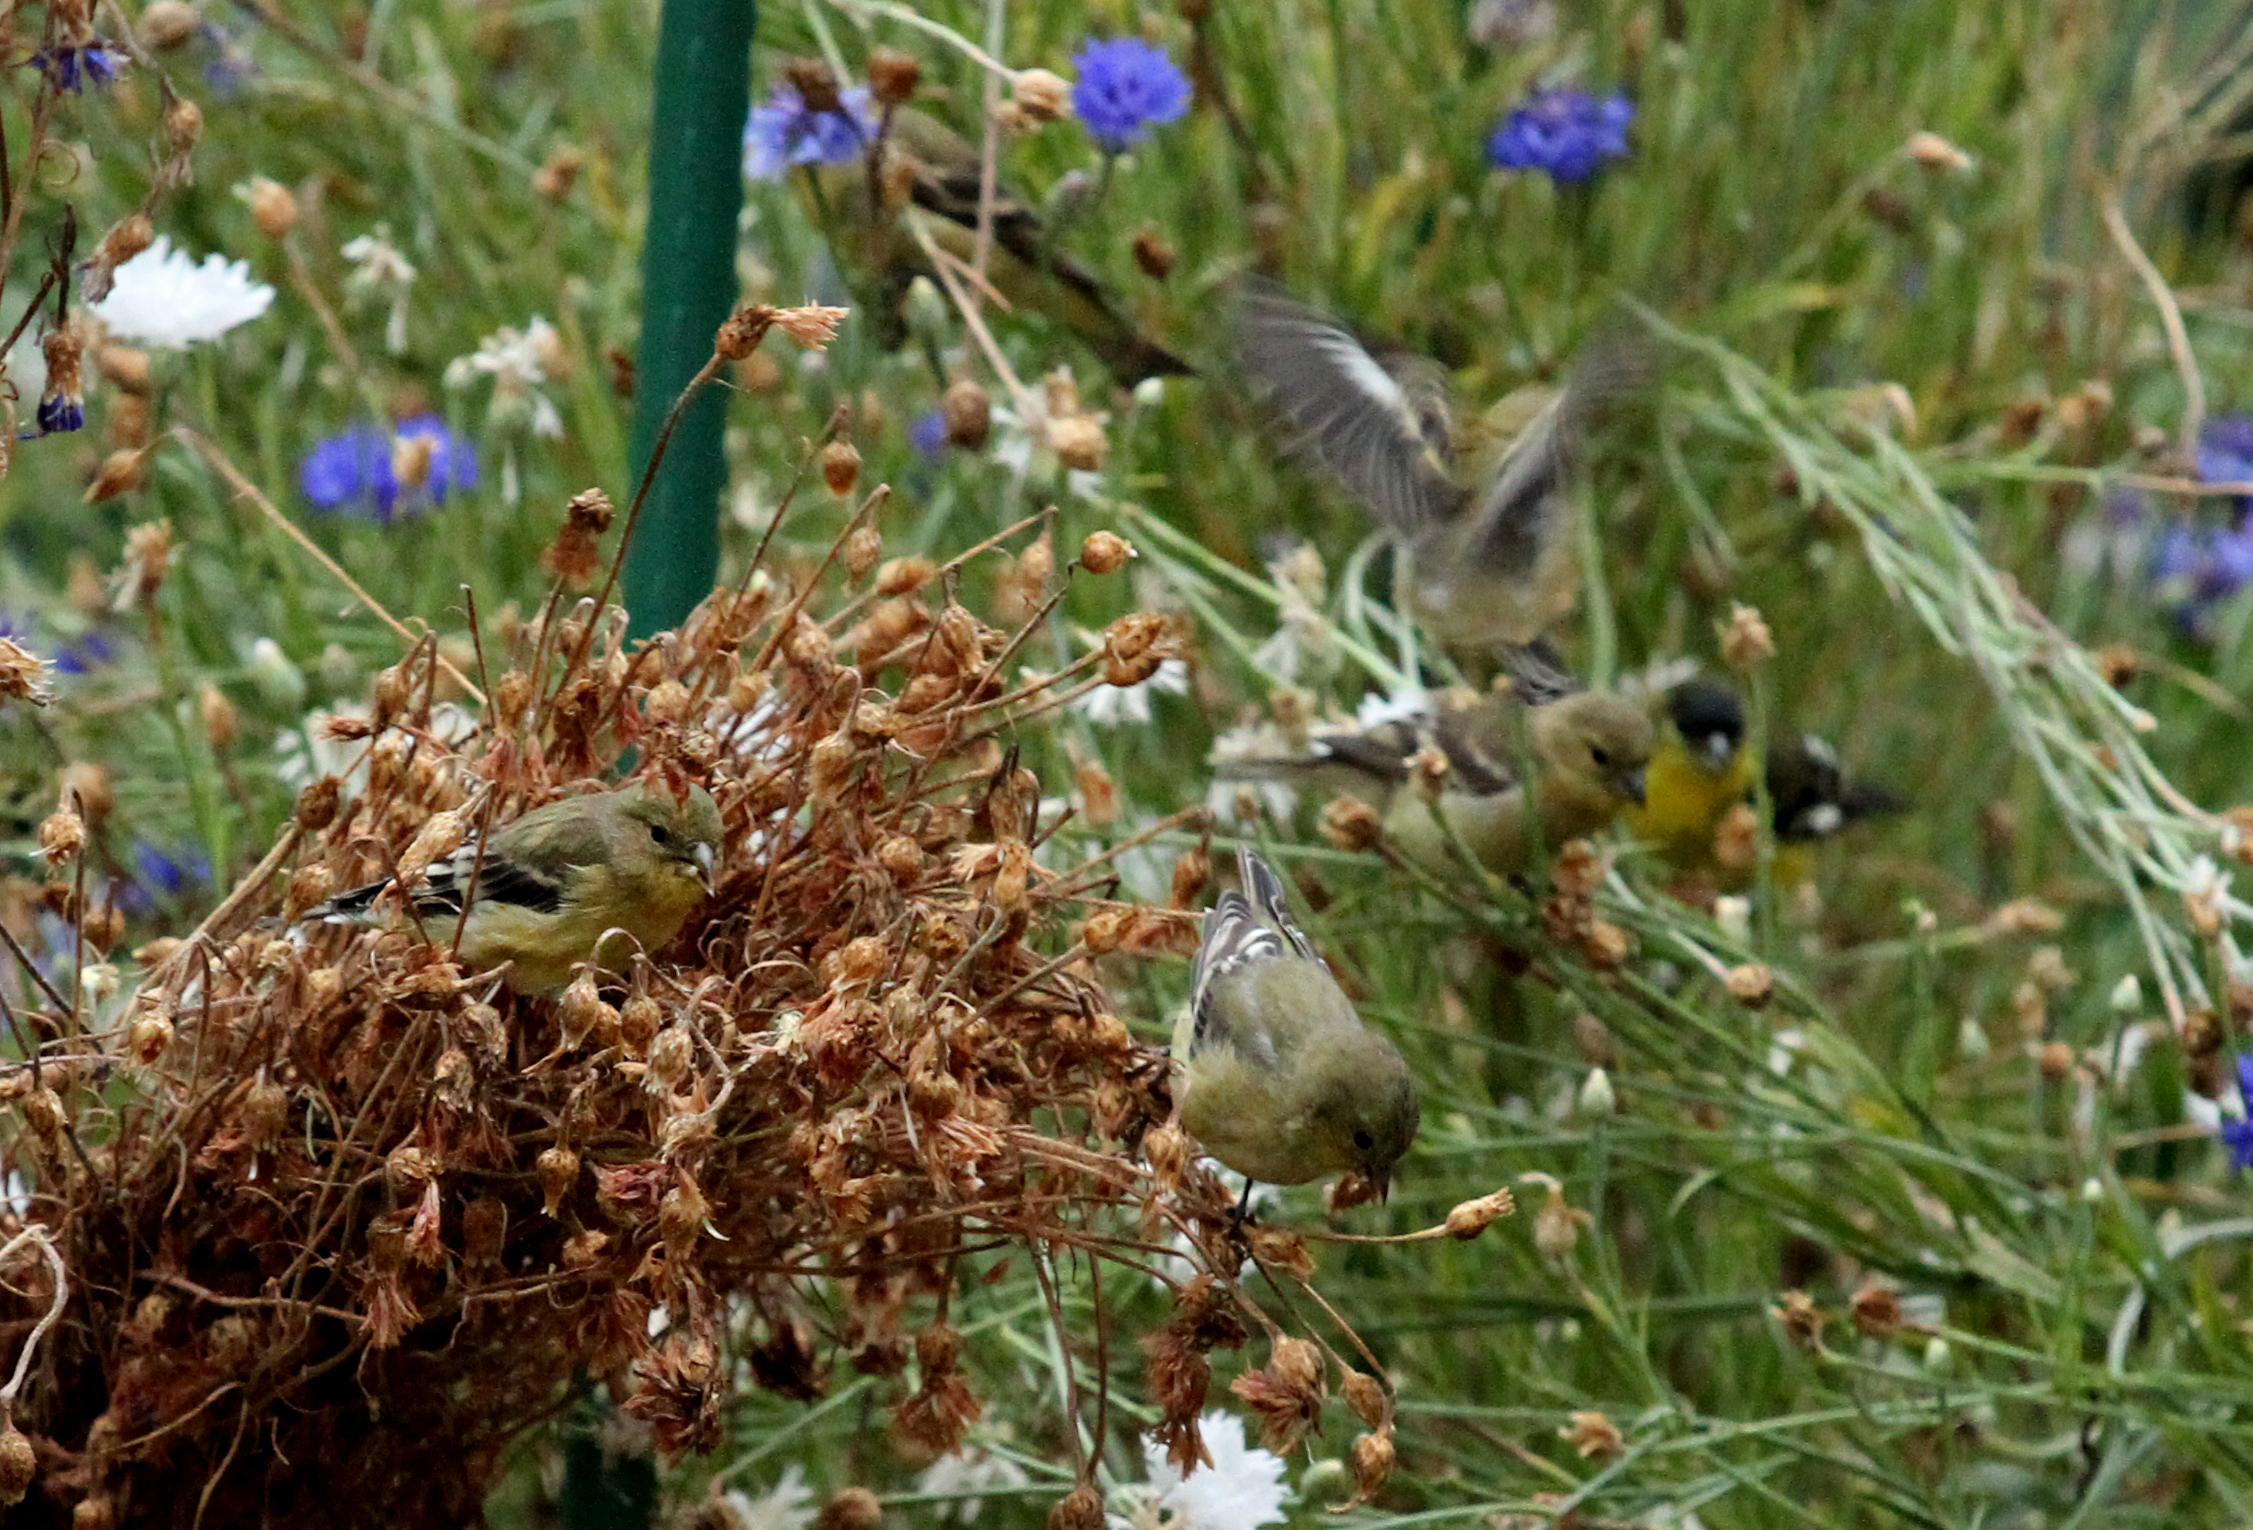 Feeding Birds in the Fall Garden